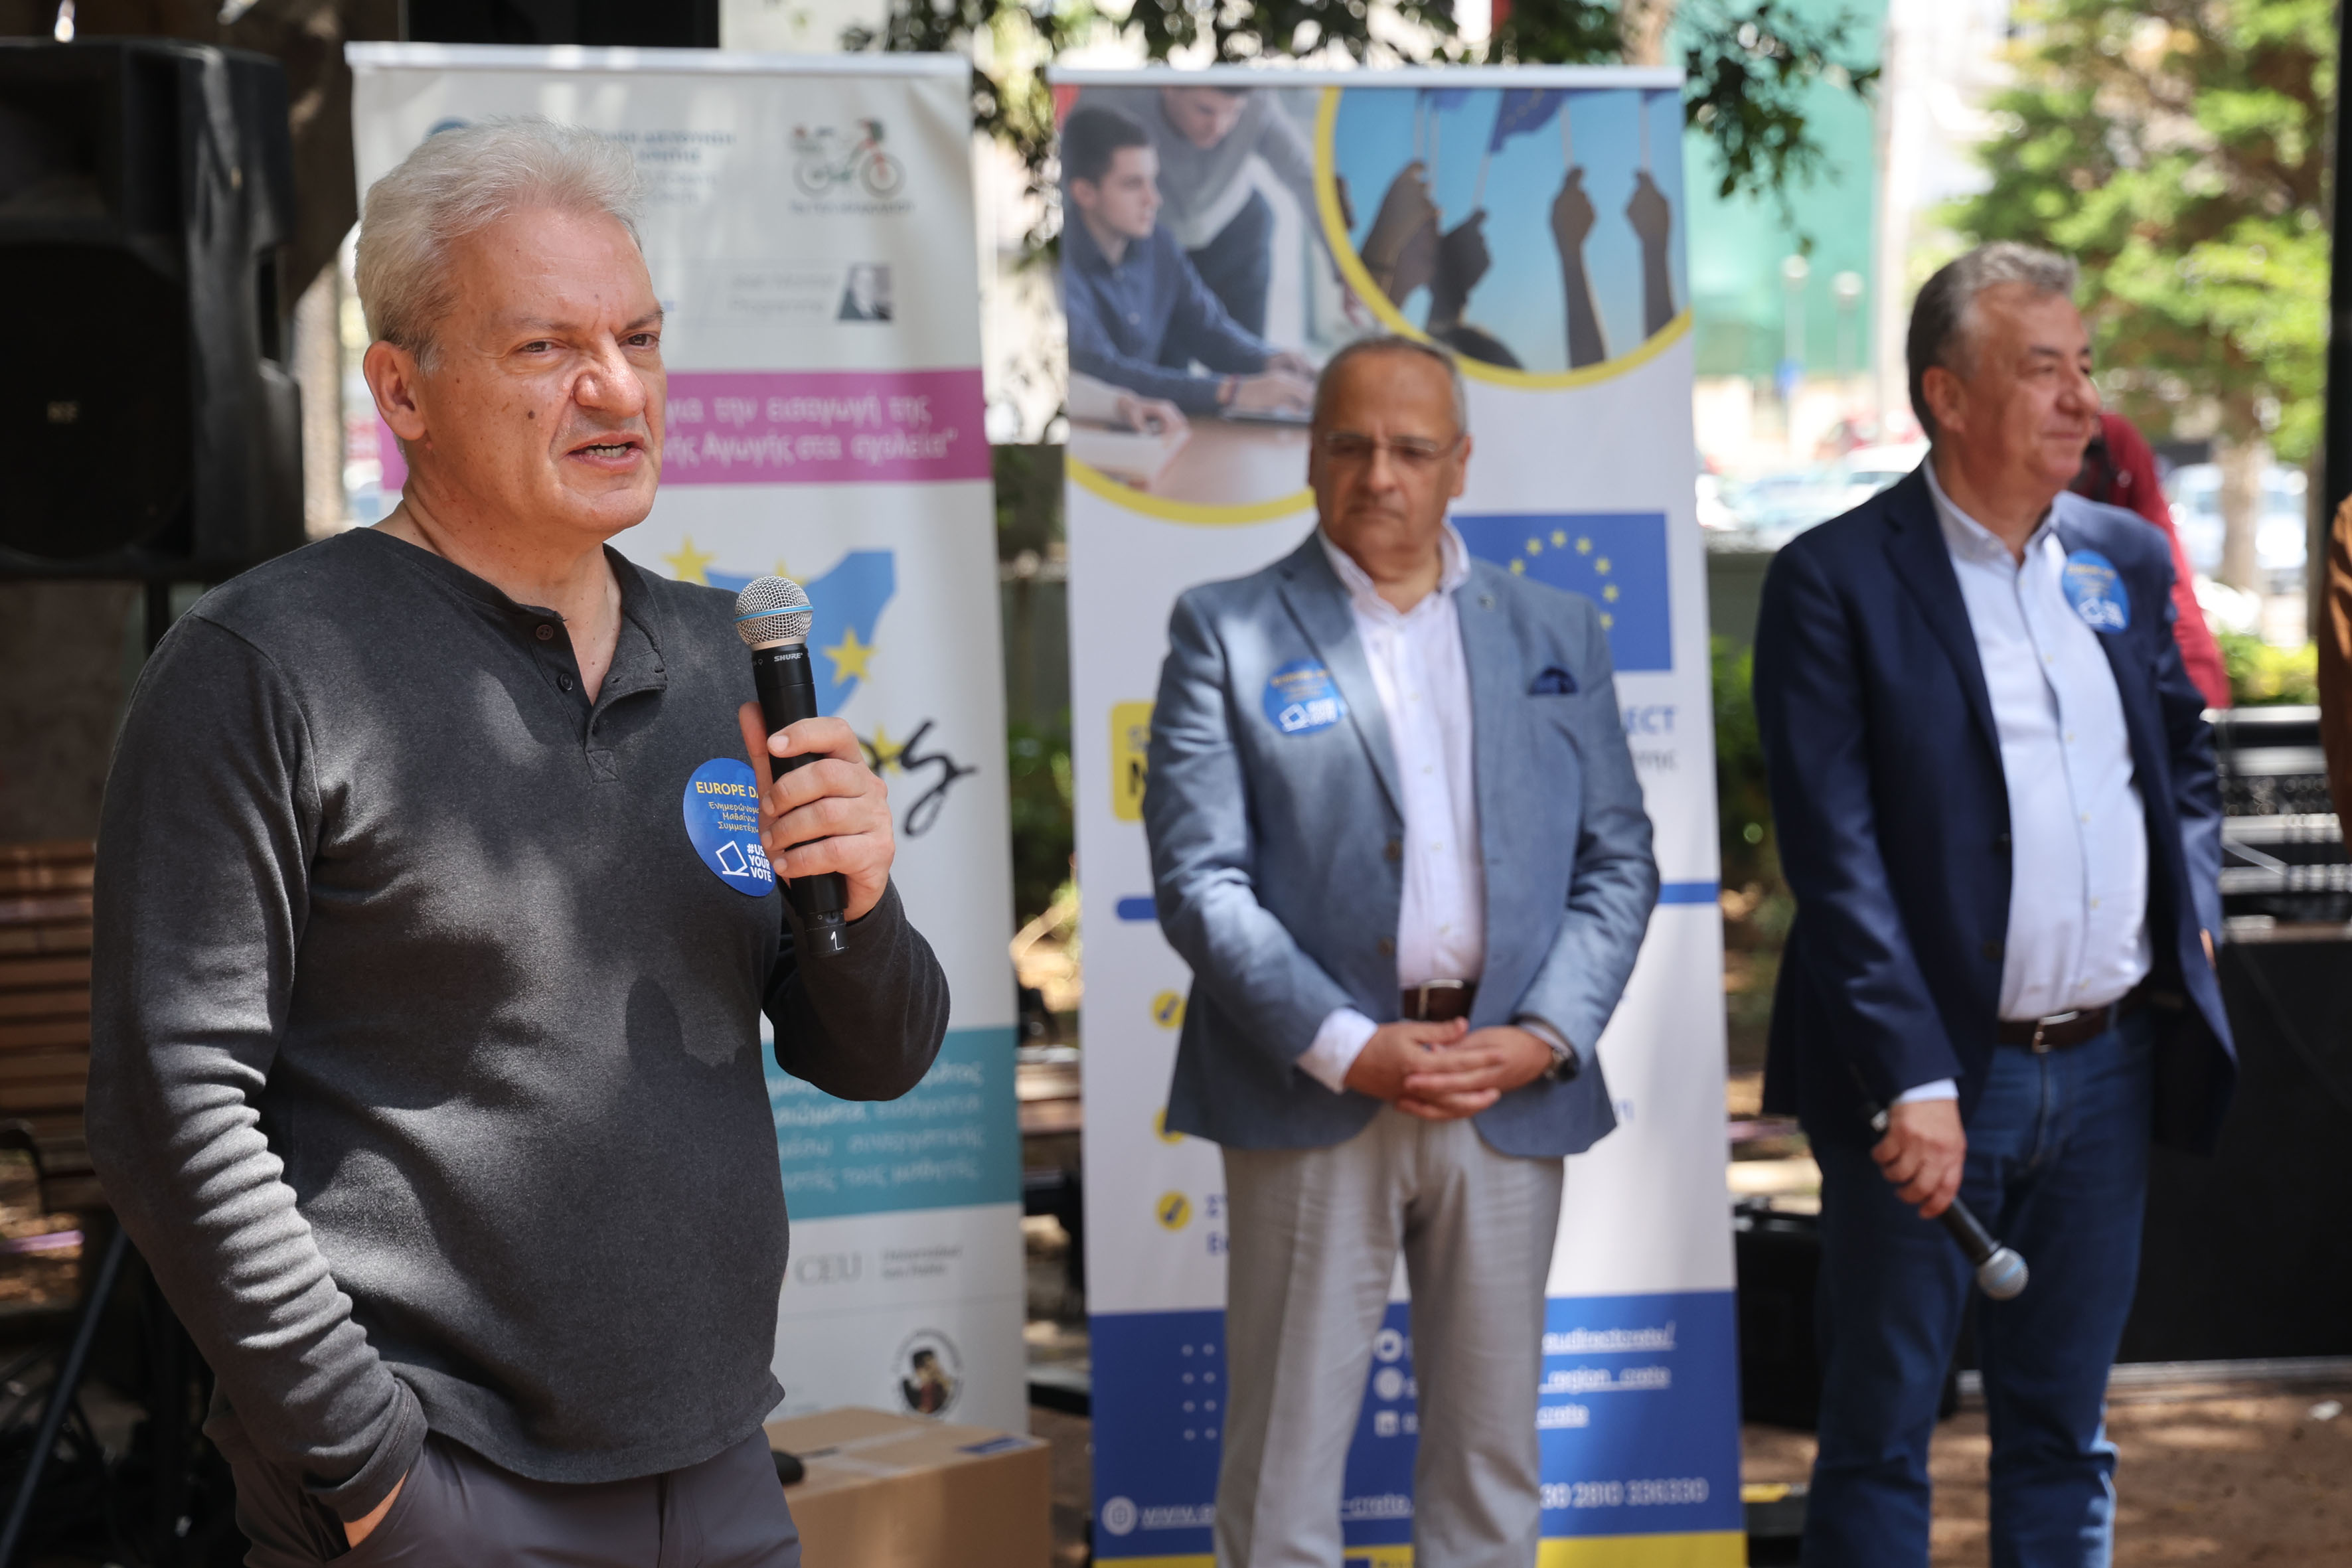 Στην εκδήλωση για την «Ημέρα της Ευρώπης 2024» ο Δήμαρχος ΗρακλείουΣτην εκδήλωση που διοργάνωσε η Περιφερειακή Διεύθυνση Εκπαίδευσης Κρήτης
για την «Ημέρα της Ευρώπης 2024» στο πάρκο Γεωργιάδη συμμετείχε ο Δήμαρχος
Ηρακλείου Αλέξης Καλοκαιρινός.
